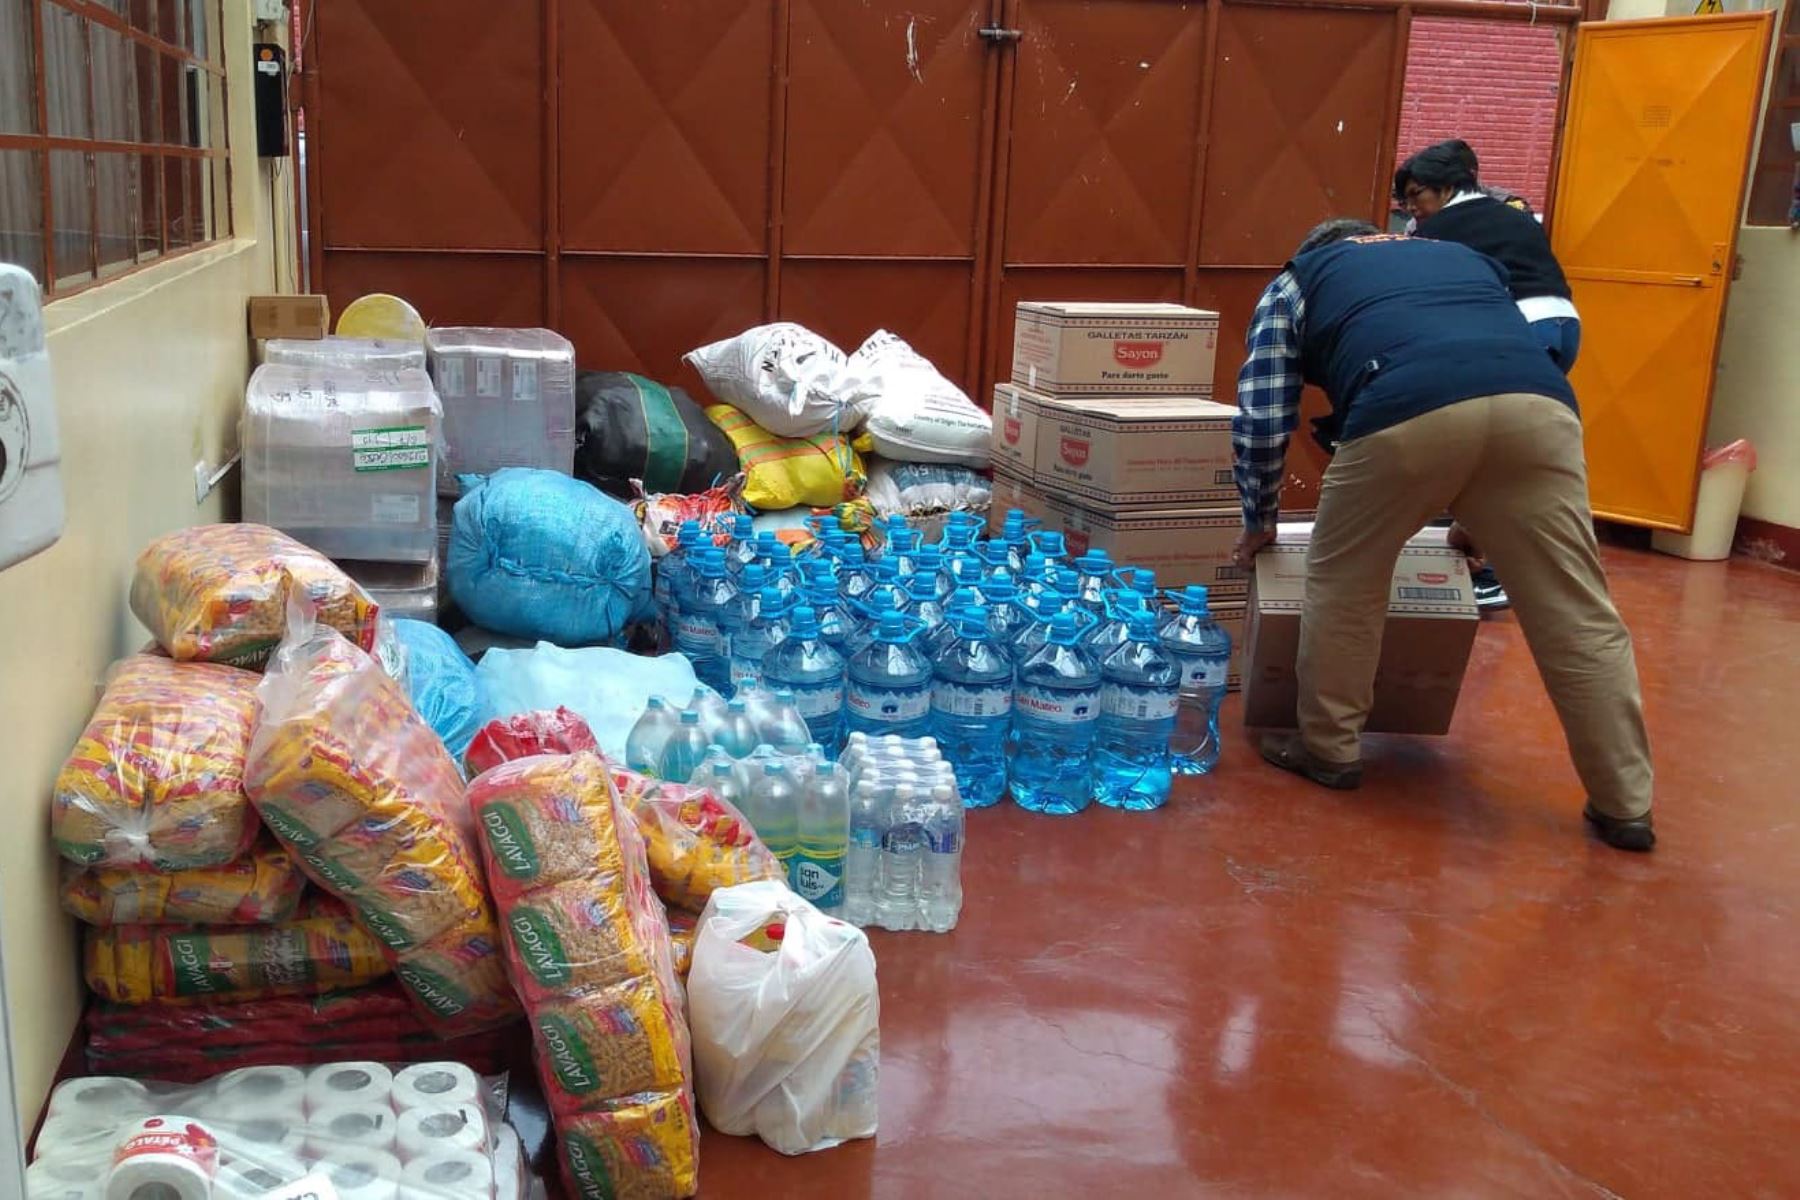 Entregarán ayuda humanitaria a damnificados por huaico en Cusco. Foto: ANDINA/Percy Hurtado Santillán.